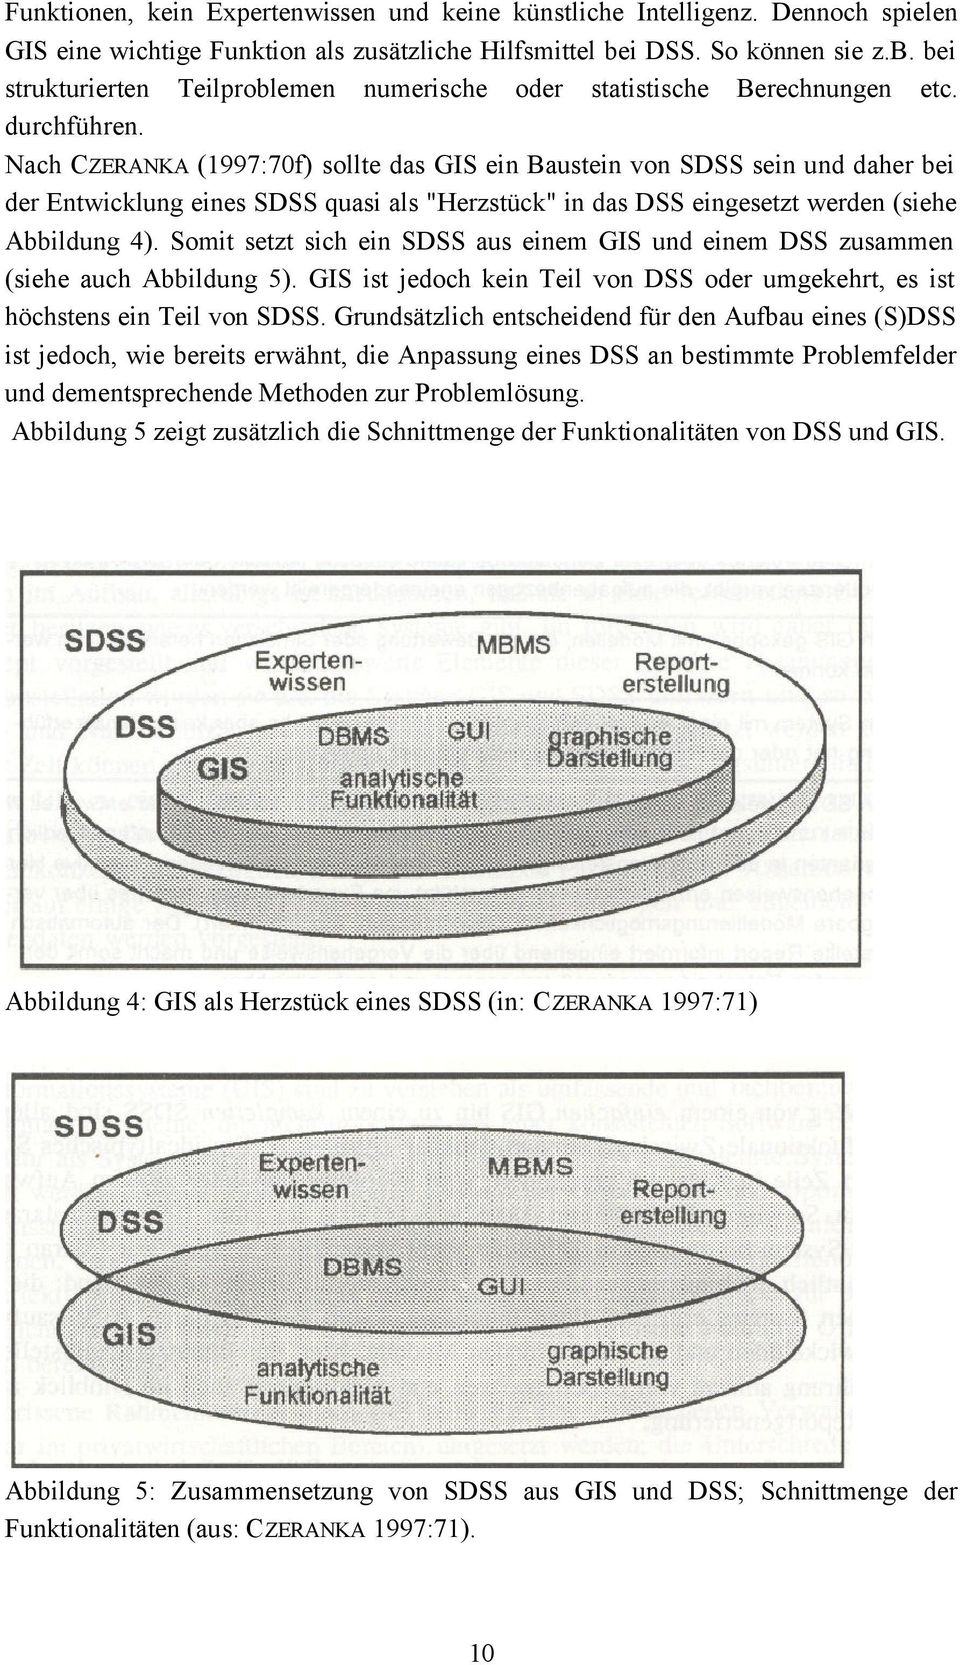 Nach CZERANKA (1997:70f) sollte das GIS ein Baustein von SDSS sein und daher bei der Entwicklung eines SDSS quasi als "Herzstück" in das DSS eingesetzt werden (siehe Abbildung 4).